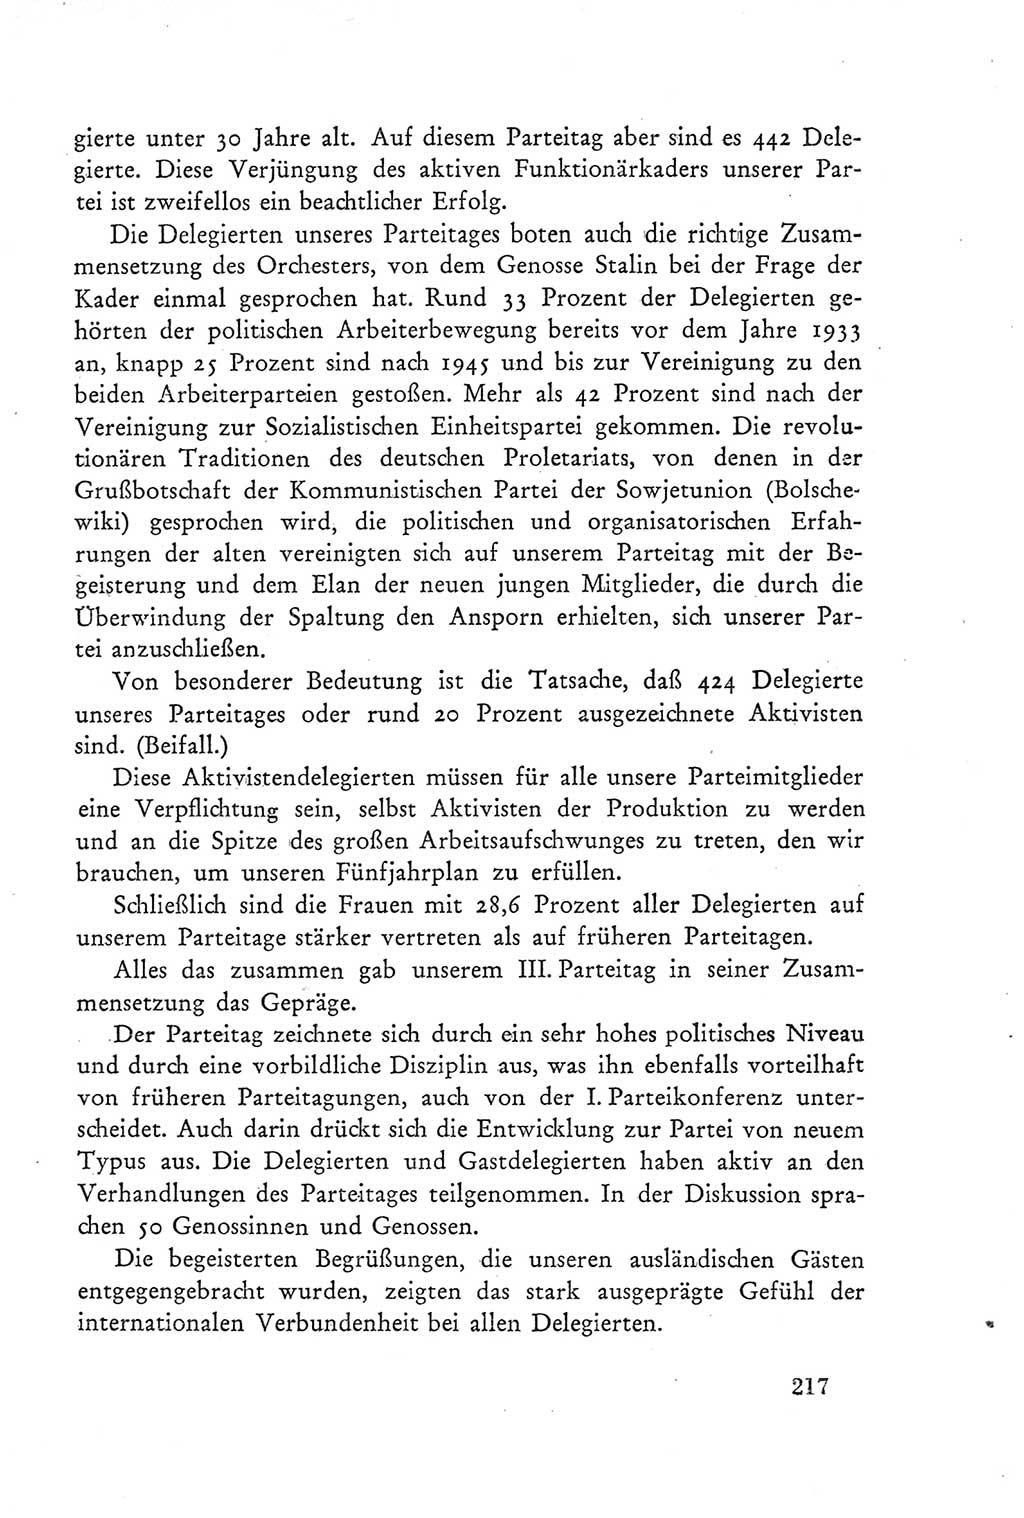 Protokoll der Verhandlungen des Ⅲ. Parteitages der Sozialistischen Einheitspartei Deutschlands (SED) [Deutsche Demokratische Republik (DDR)] 1950, Band 2, Seite 217 (Prot. Verh. Ⅲ. PT SED DDR 1950, Bd. 2, S. 217)